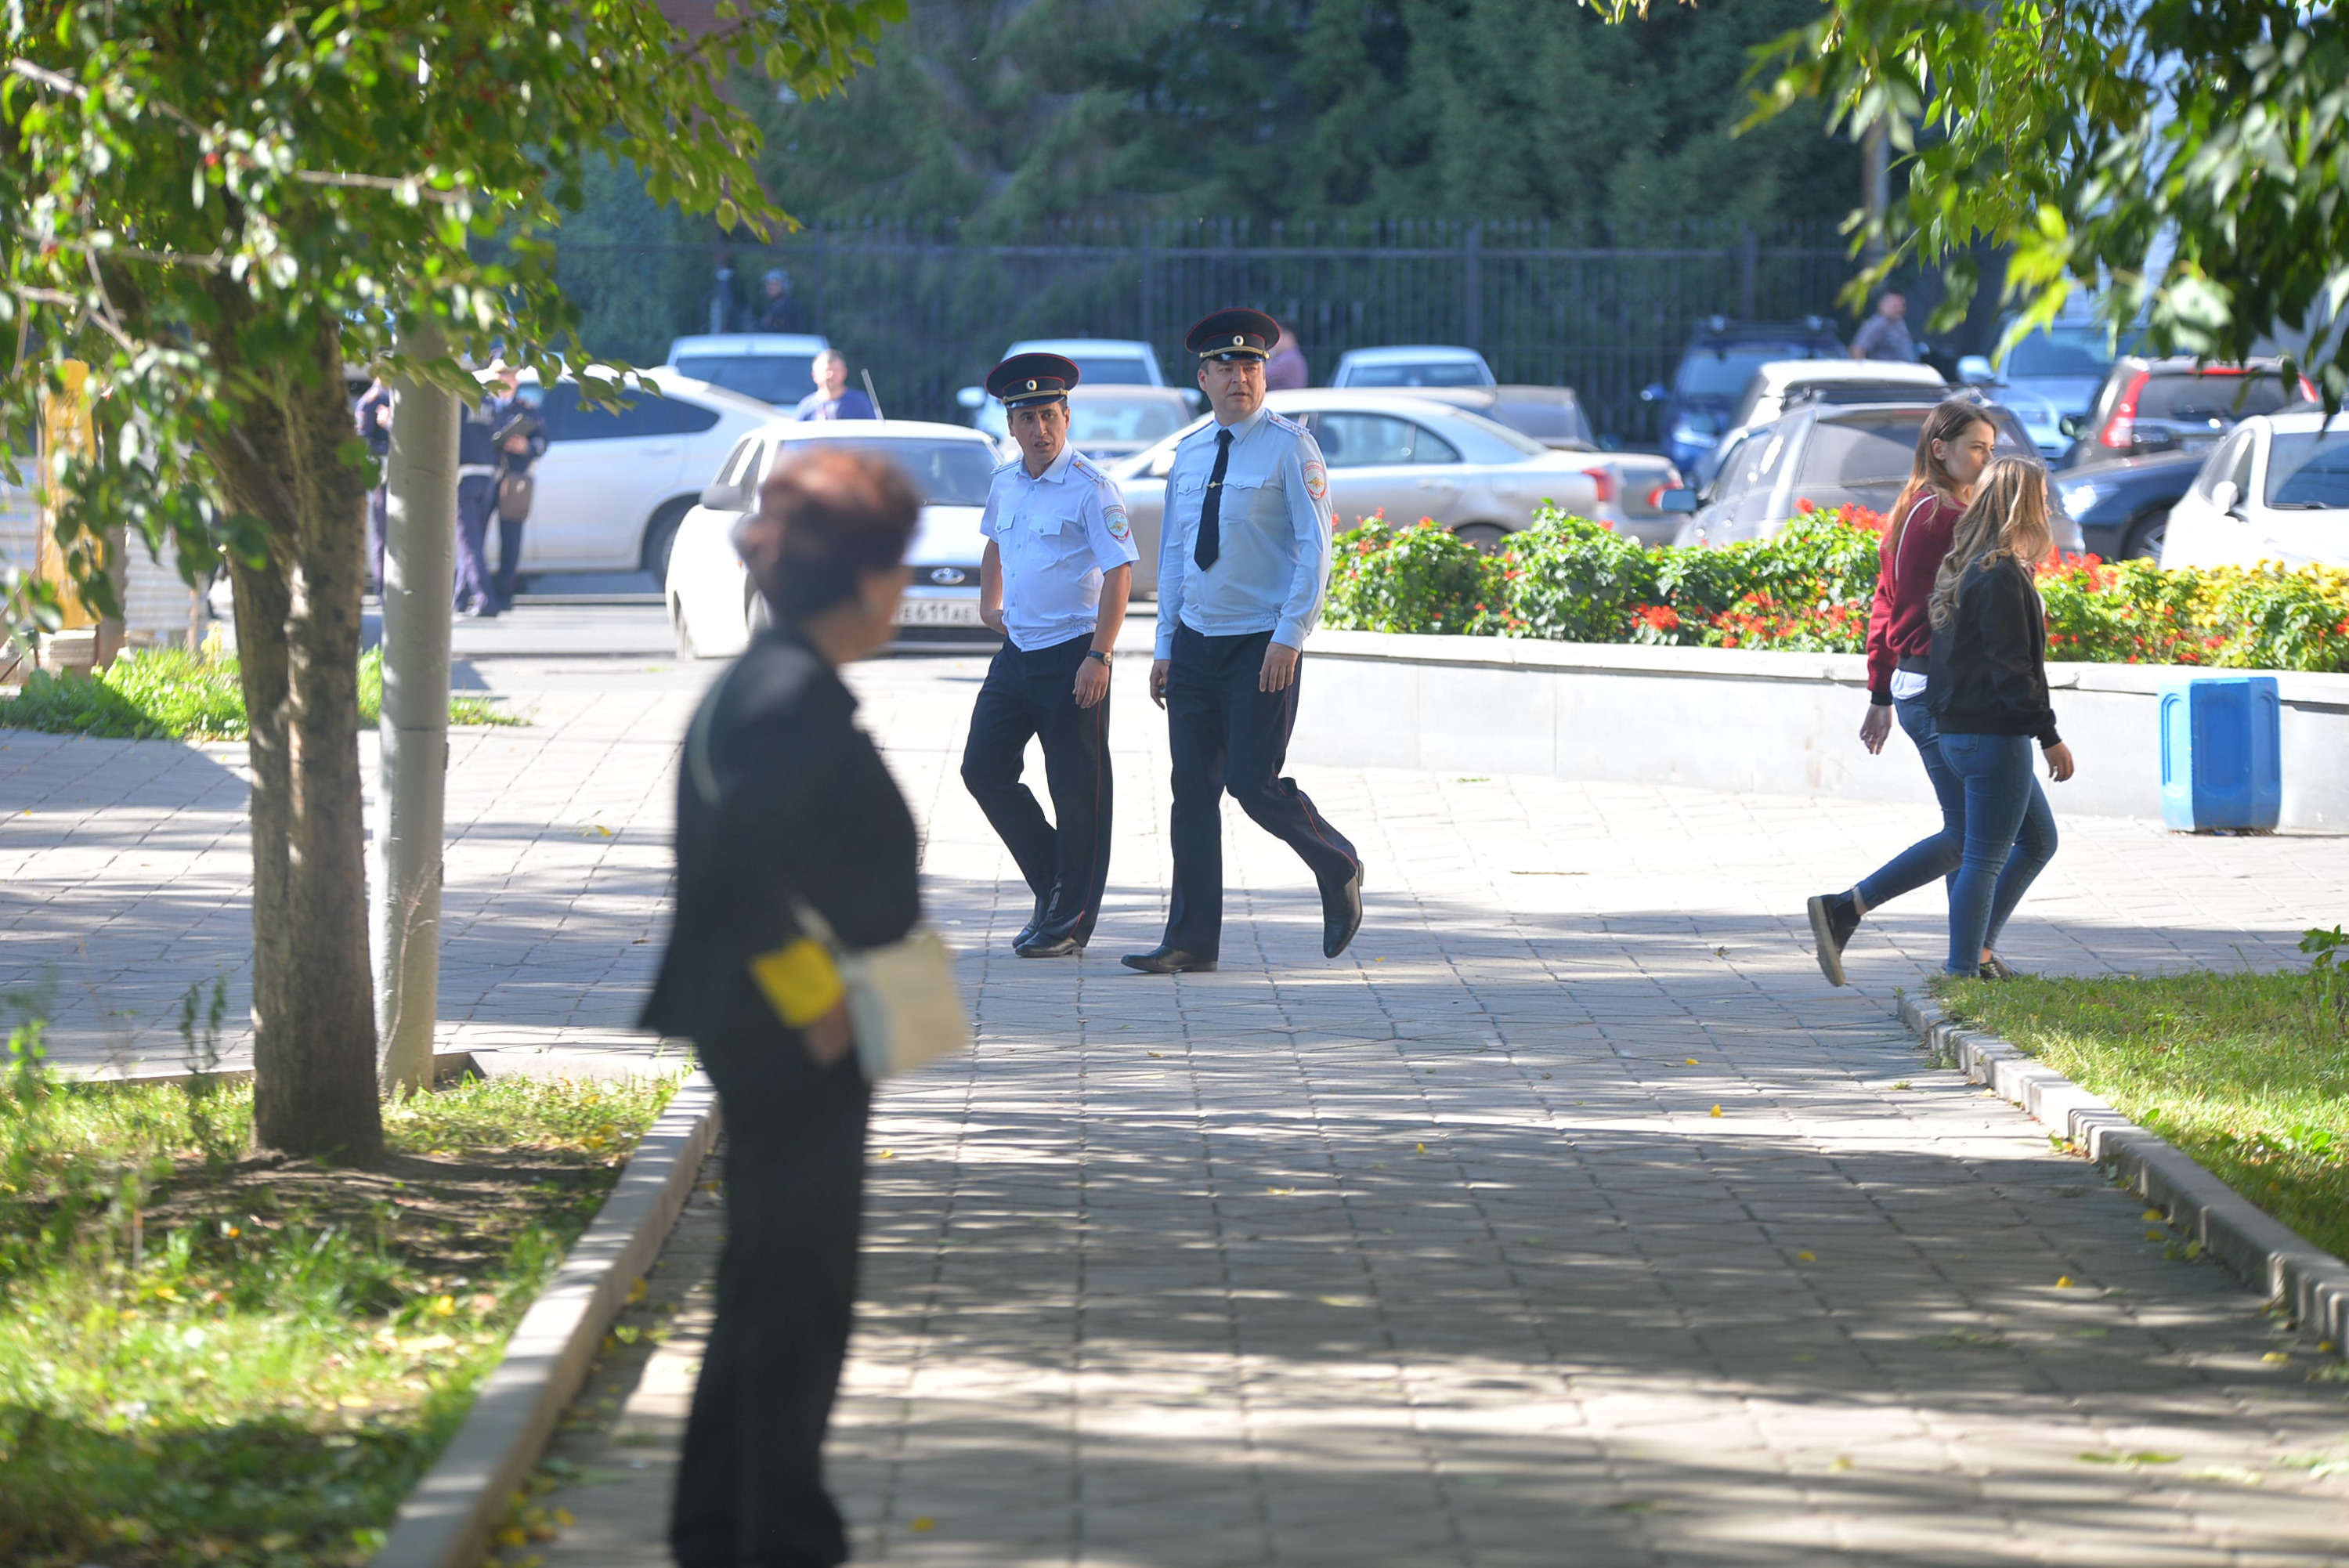 Читинца с антивоенным плакатом увезли с площади полицейские